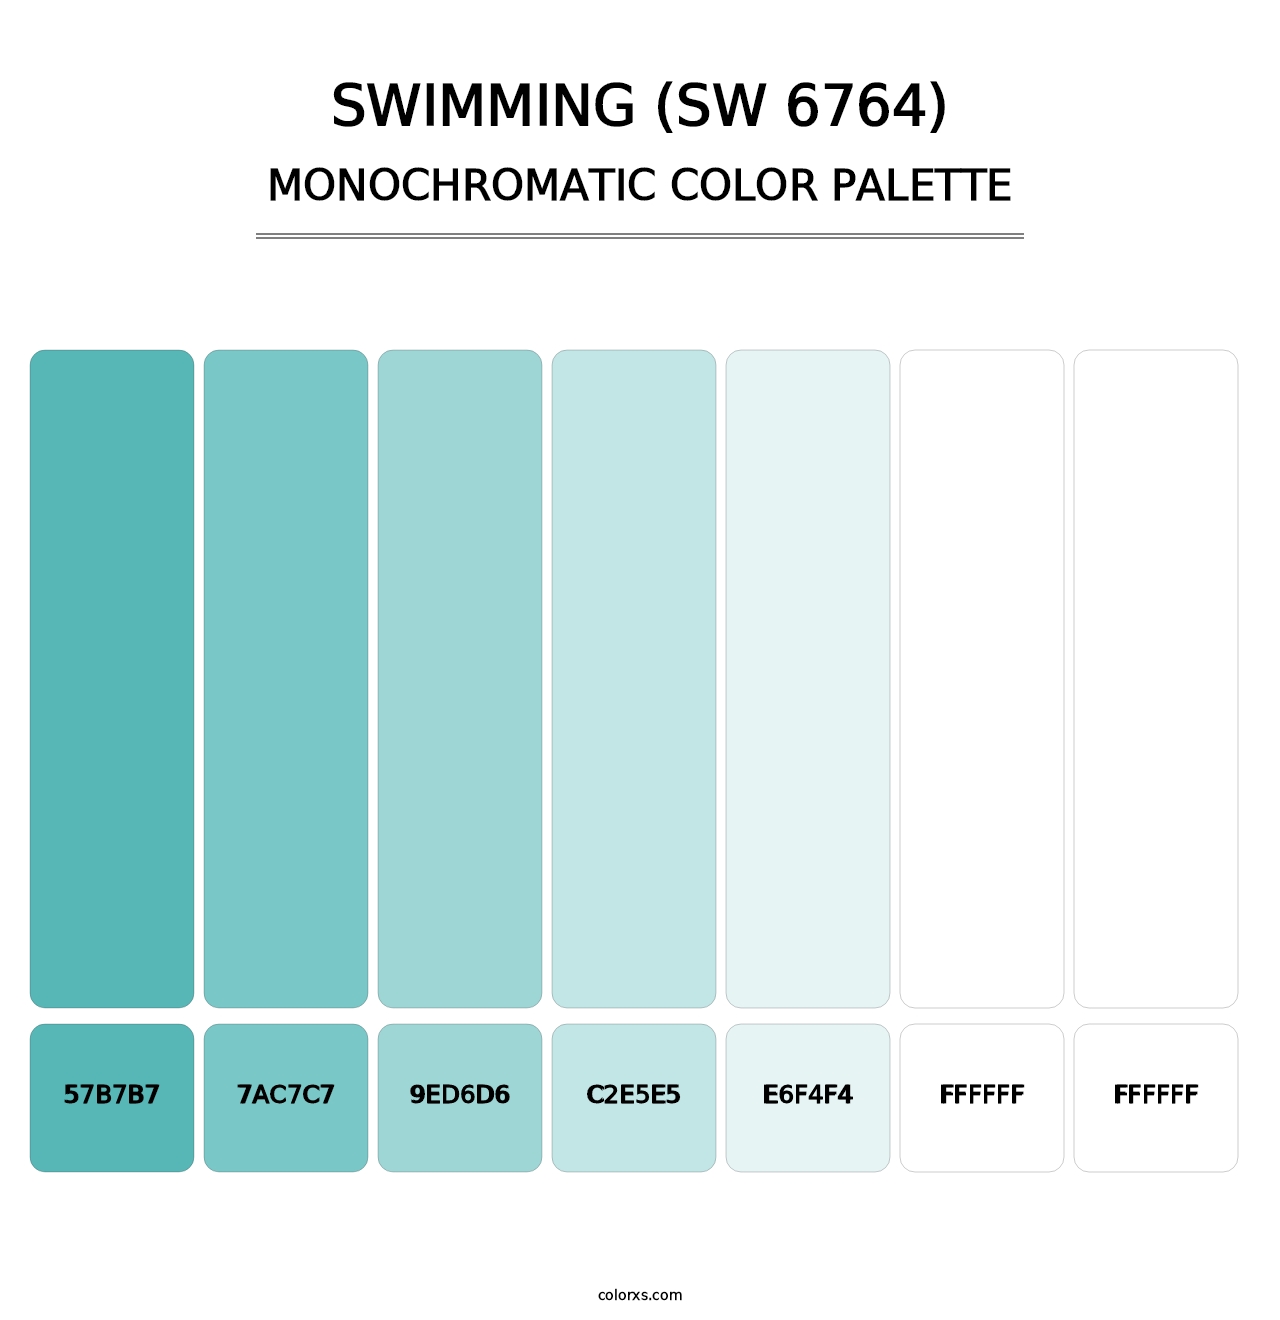 Swimming (SW 6764) - Monochromatic Color Palette